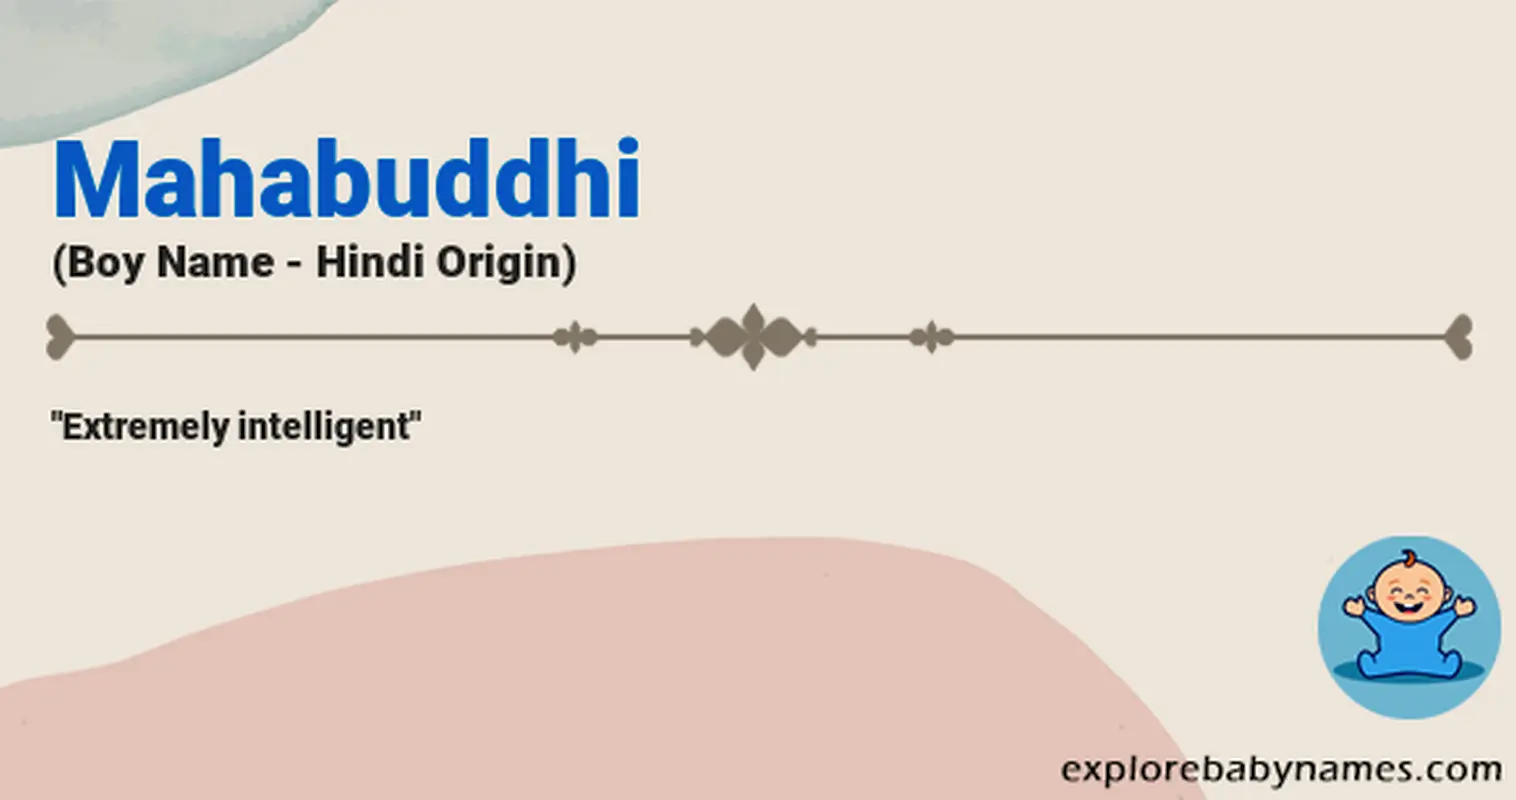 Meaning of Mahabuddhi